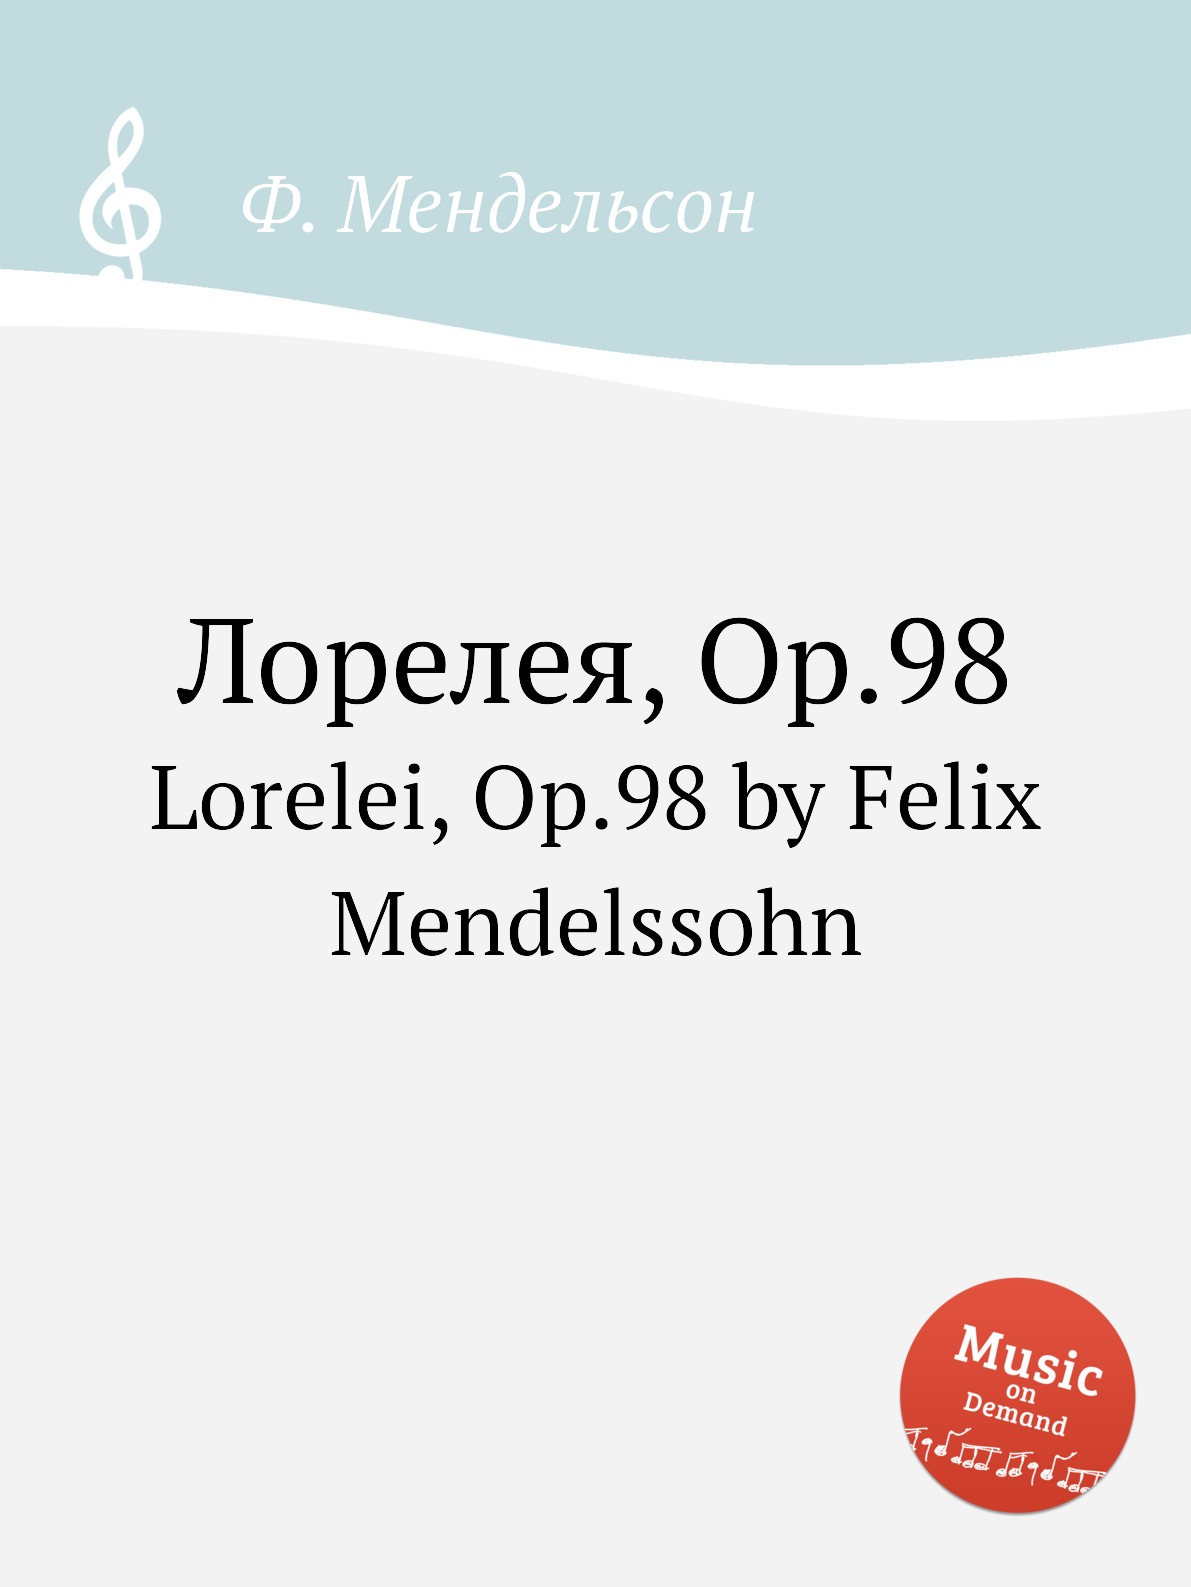 фото Книга лорелея, op.98. lorelei, op.98 by felix mendelssohn музбука